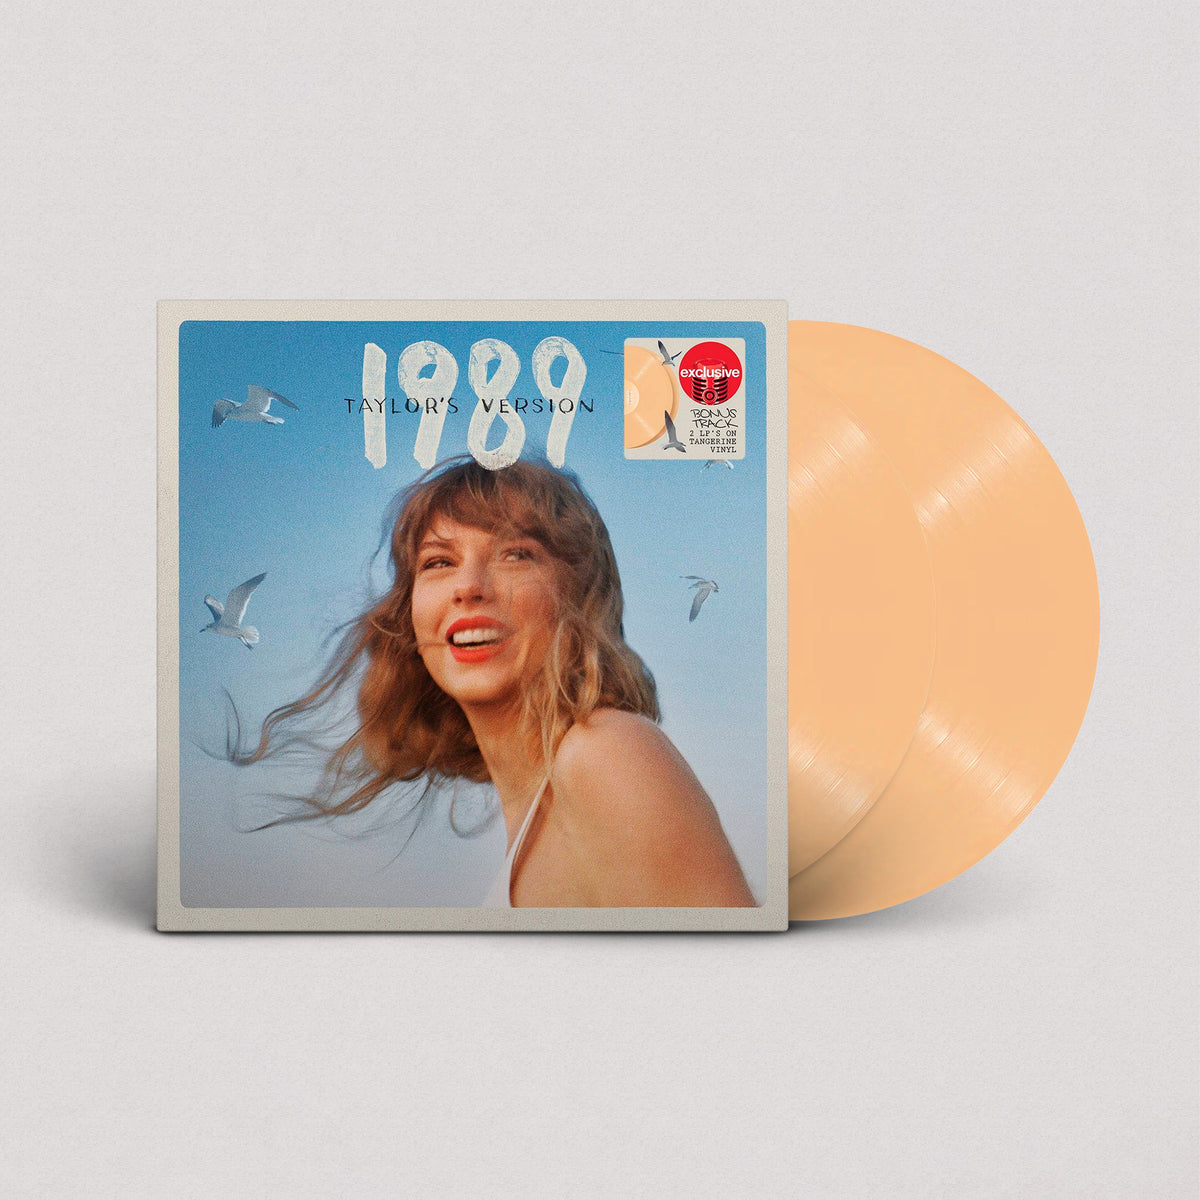 Taylor Swift - 1989 "Taylor's Version" (Target Exclusive, Vinilo 2'LP)